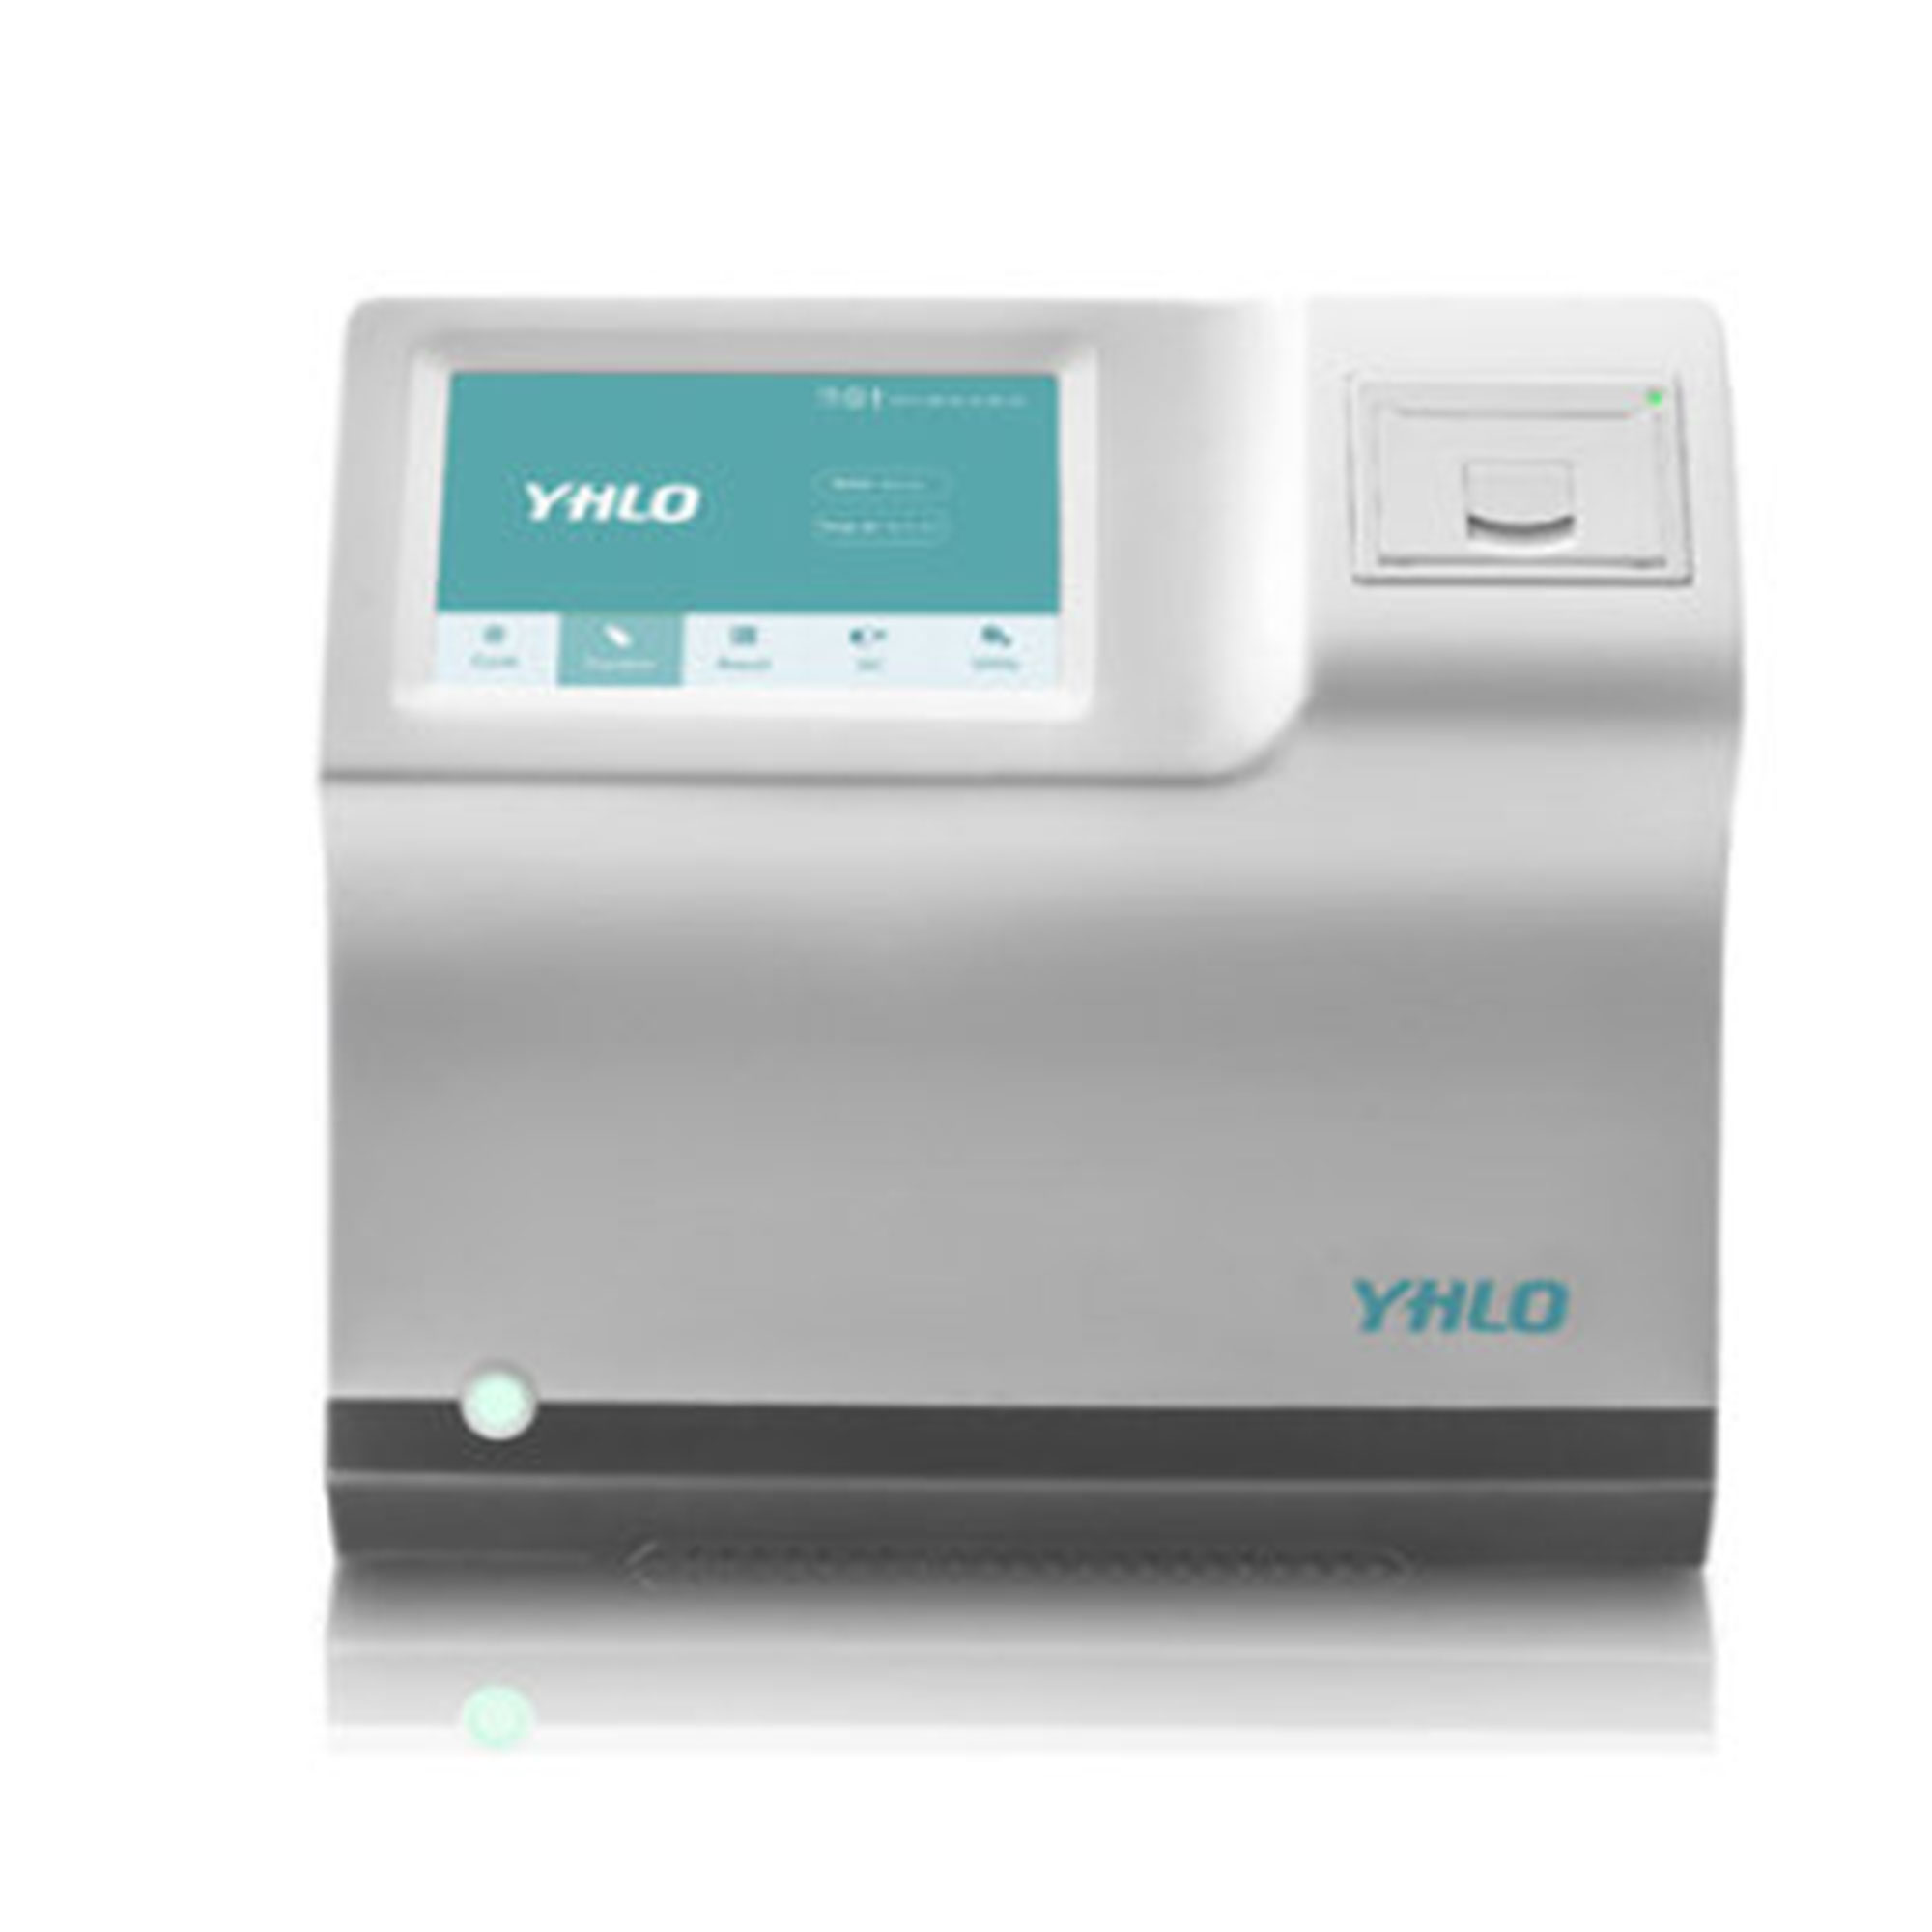 دستگاه سدیمان  آنالایزر پرو 8 - Vision Pro A ESR Analyzer - VHLO - دستگاه - هماتولوژی و بانک خون - آریا تشخیص پارس